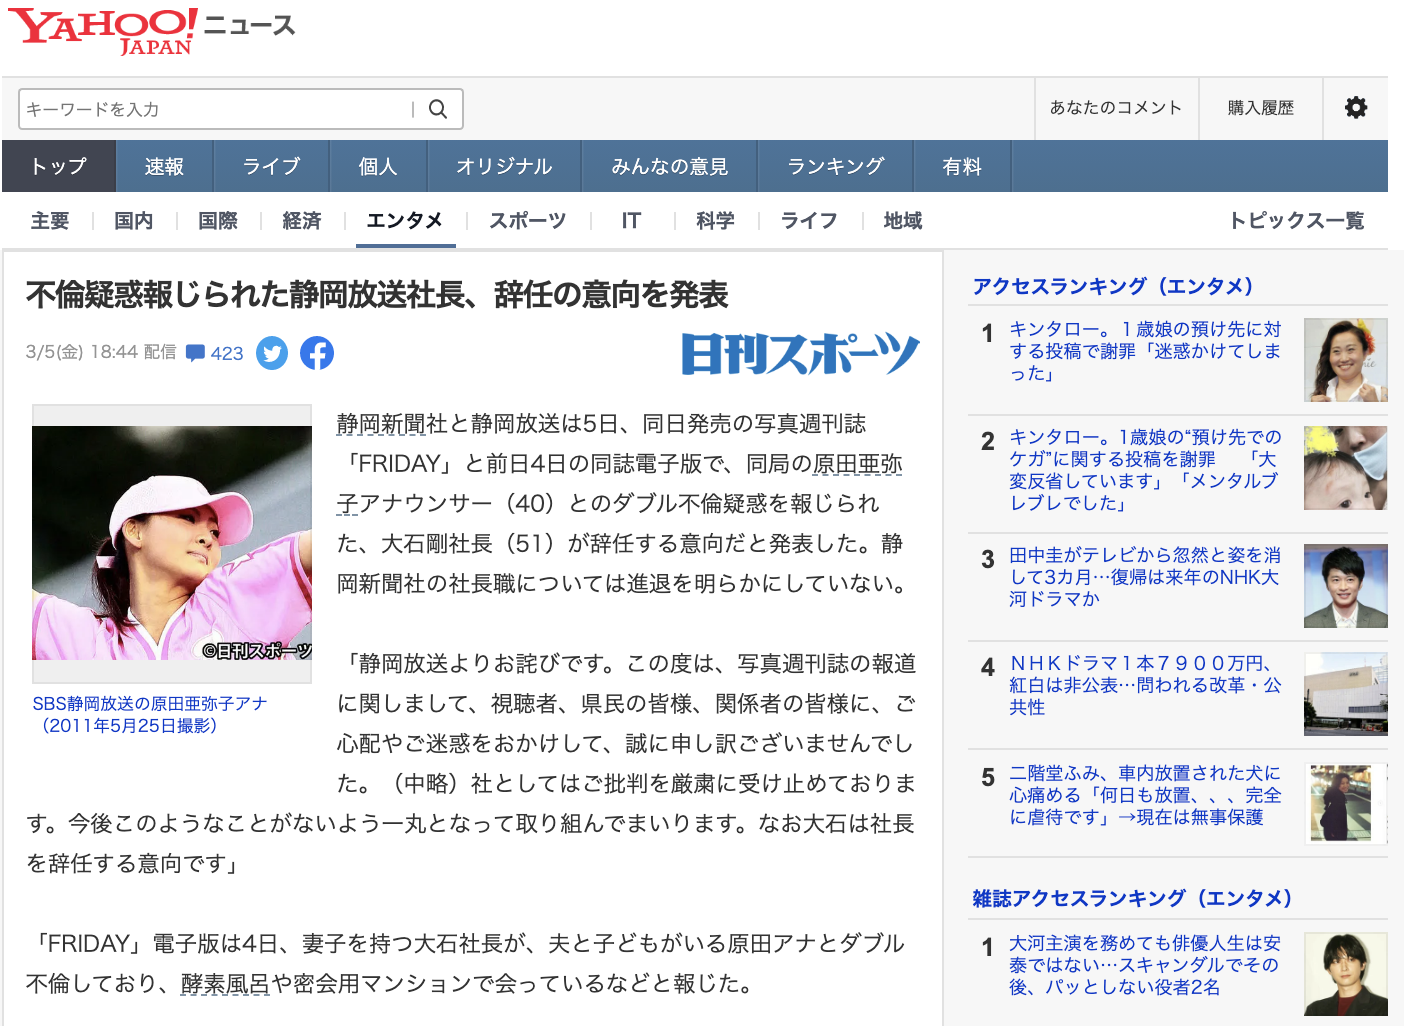 不倫疑惑報じられた静岡放送社長、辞任の意向を発表